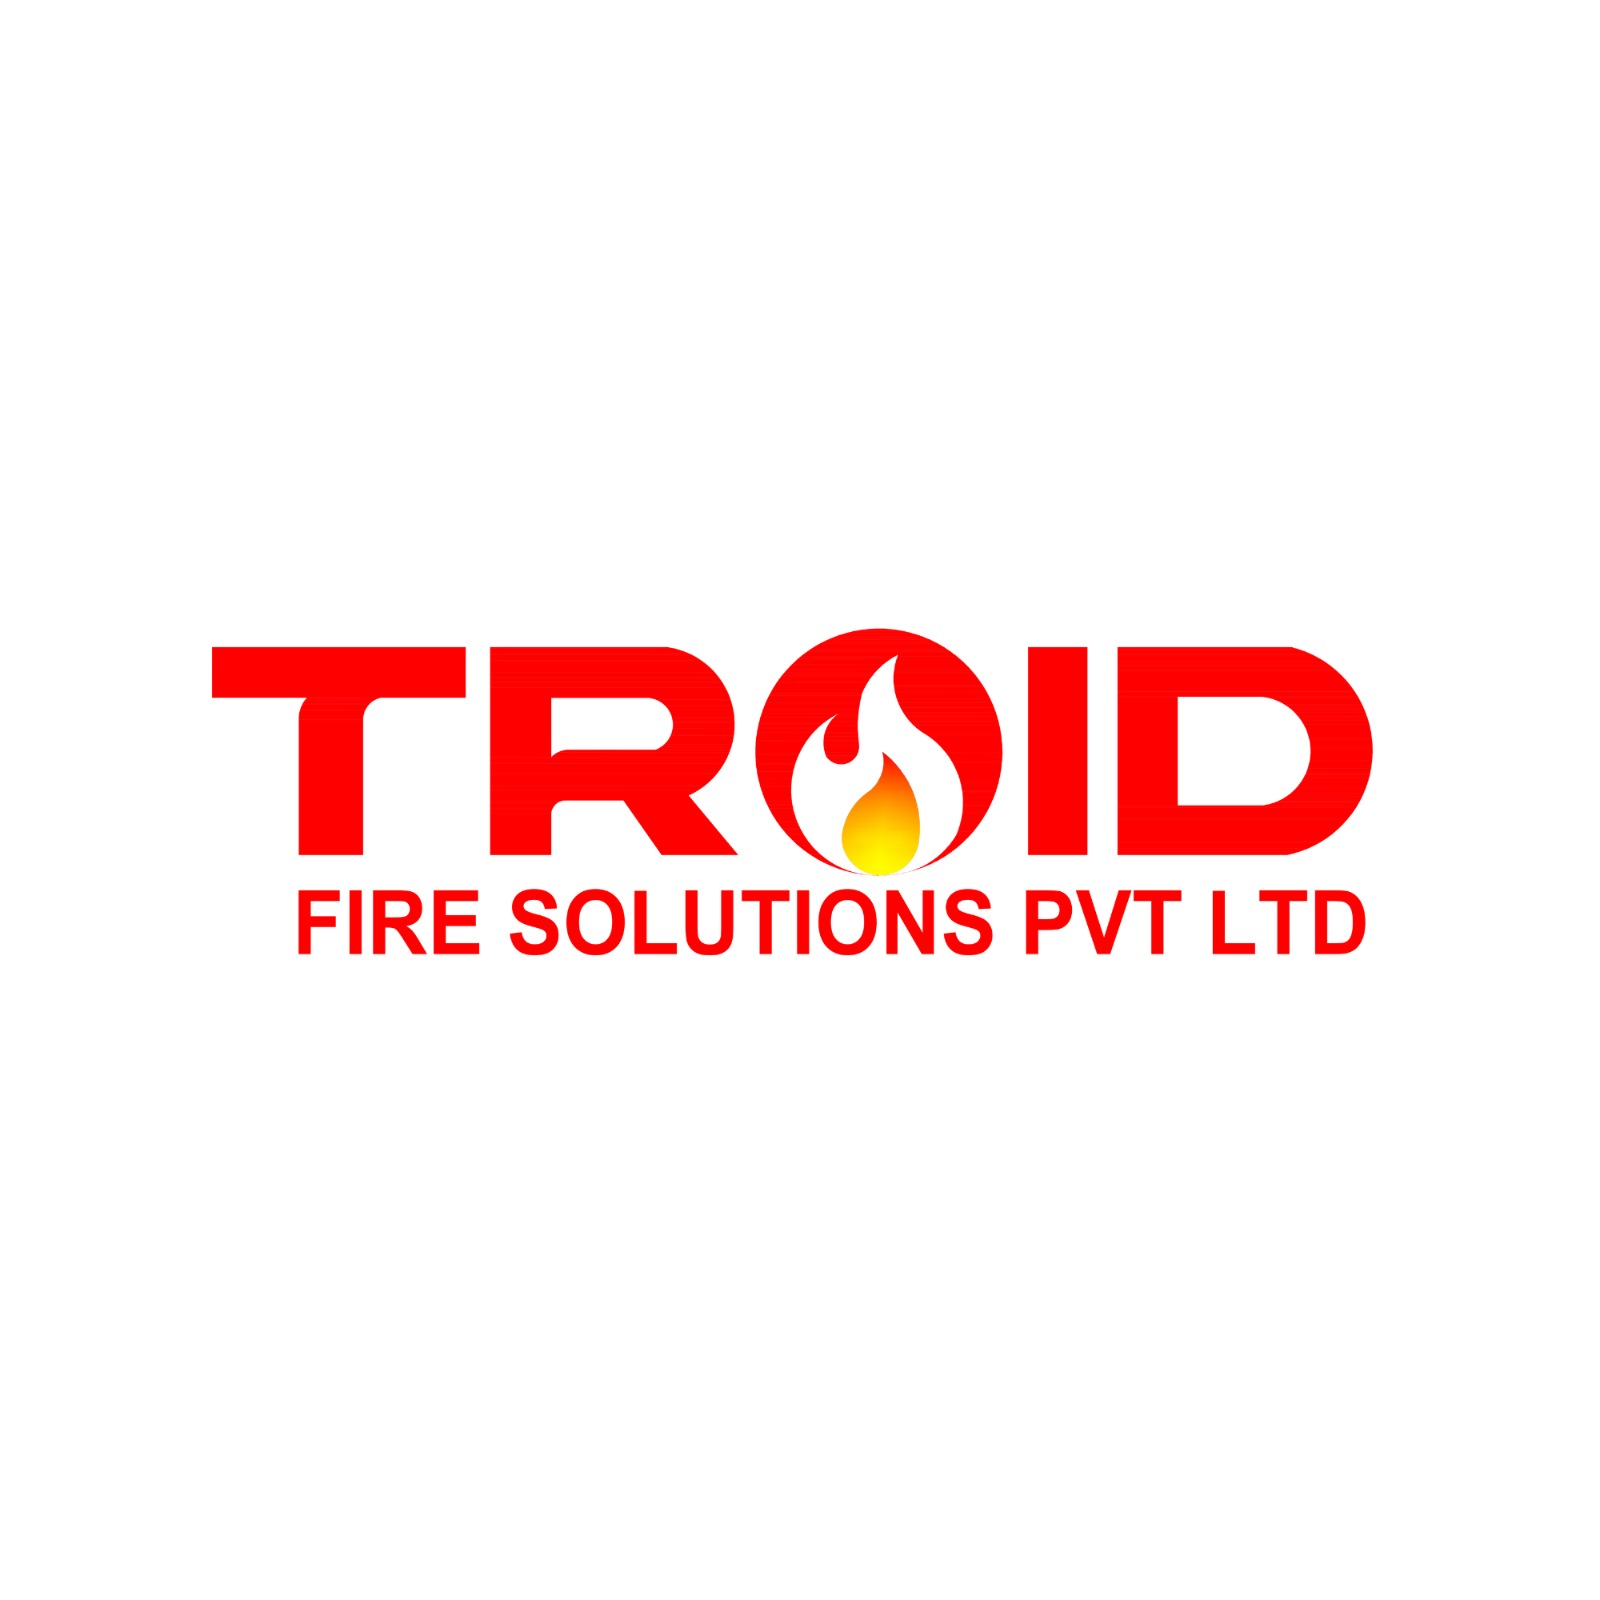 Troid Fire Solution Pvt Ltd